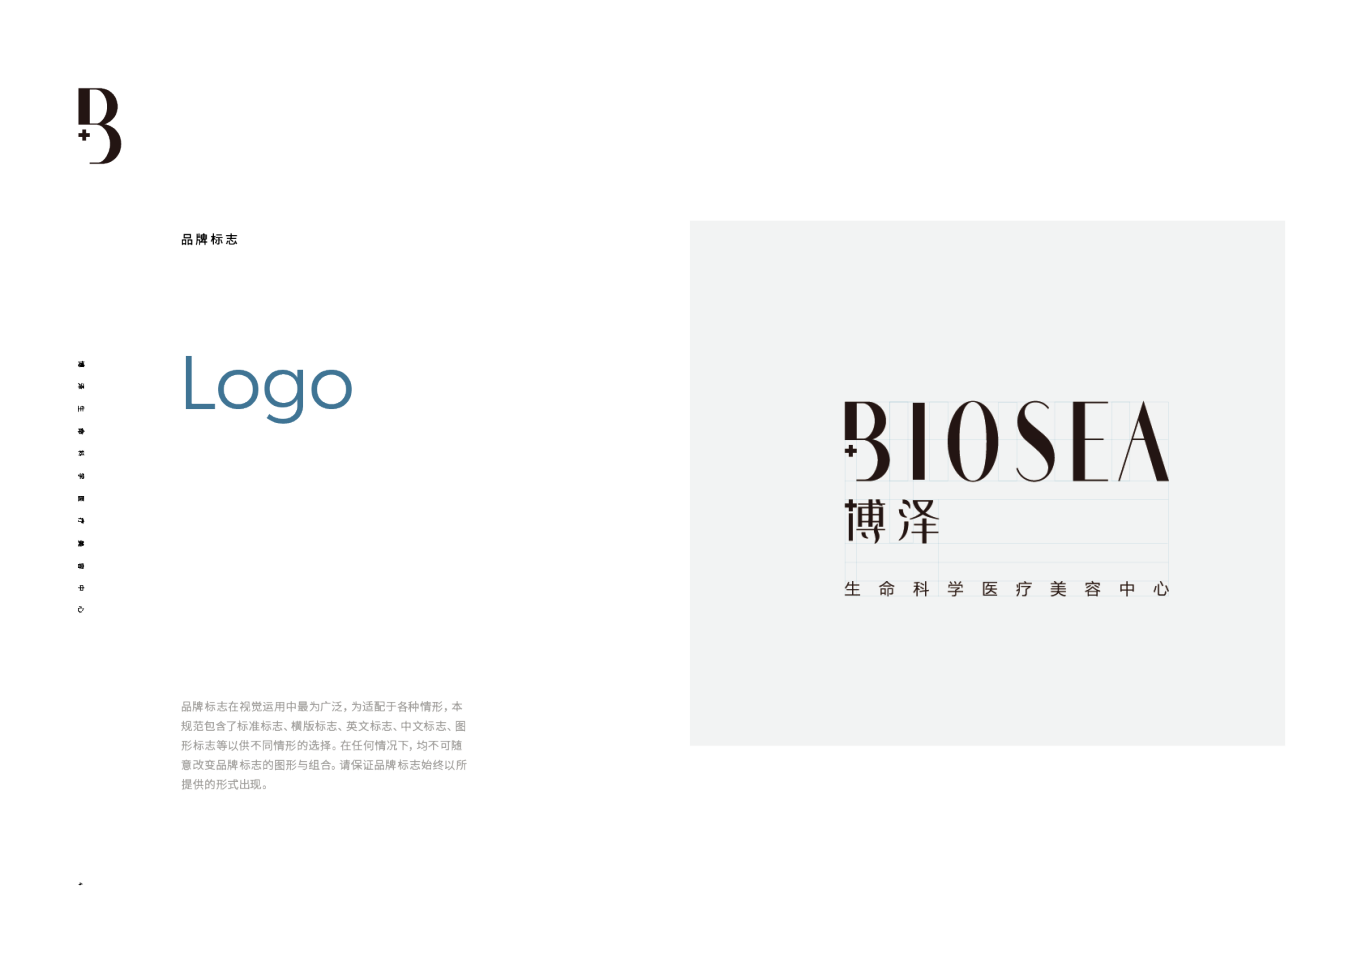 Biosea-博泽图3